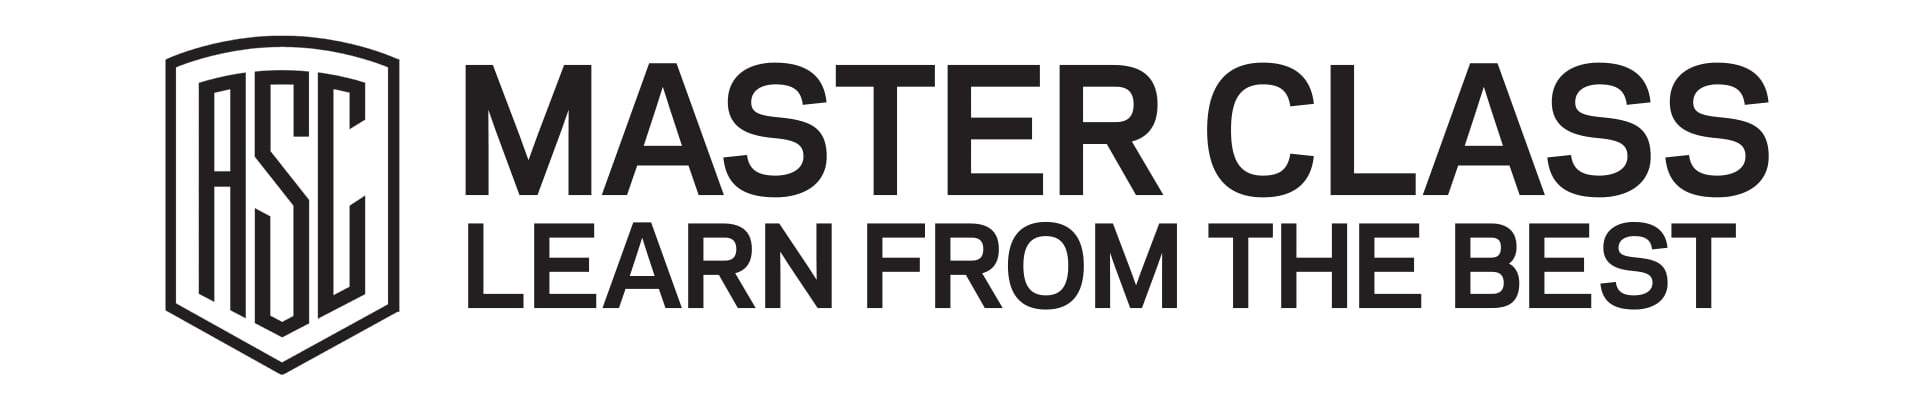 ASC-Master-Class-Logo-New.jpg?mtime=20220712130551#asset:114318